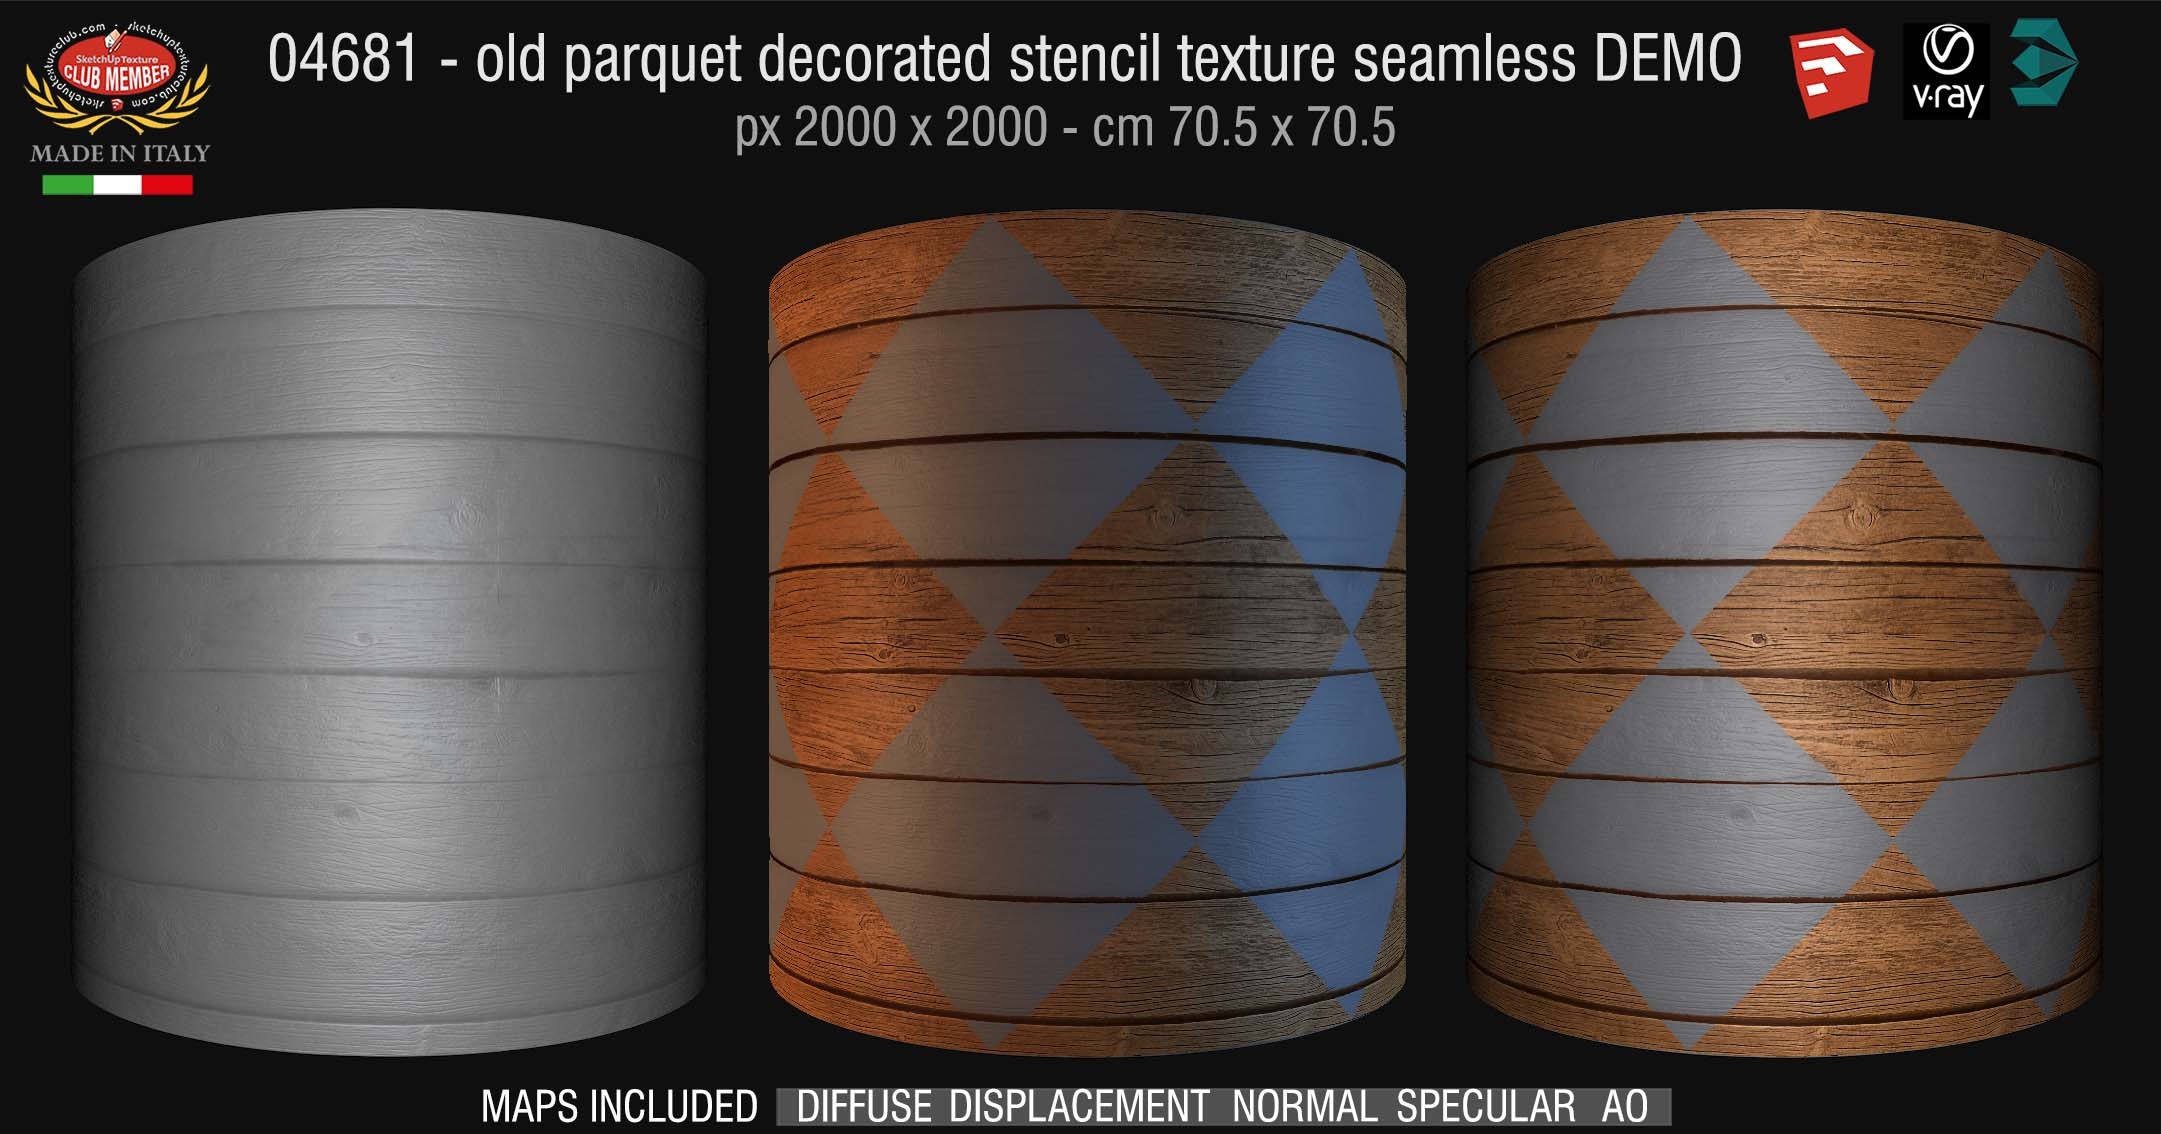 04681 HR Parquet decorated stencil texture seamless + maps DEMO